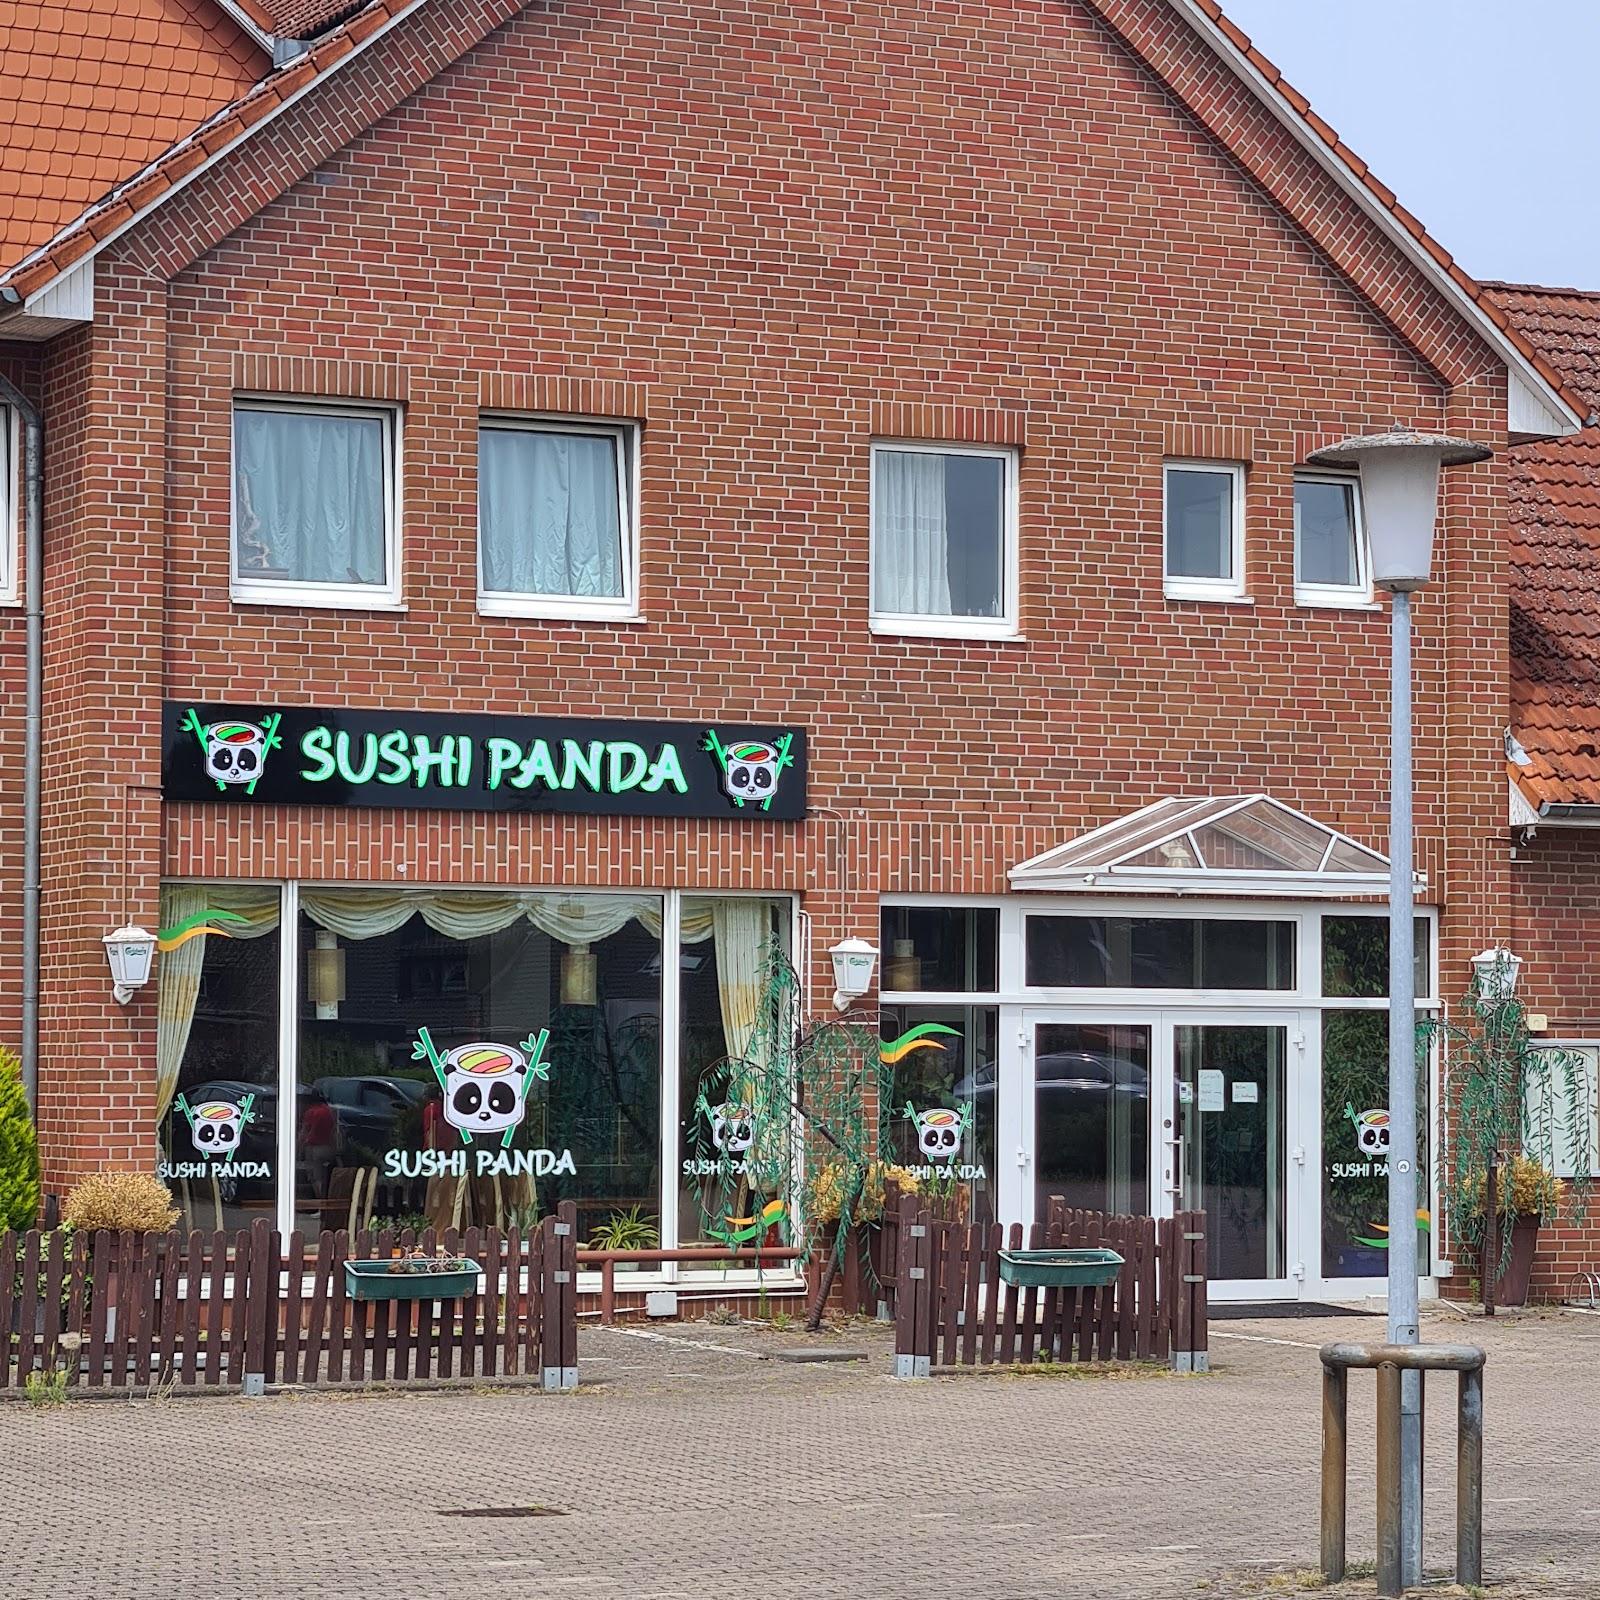 Restaurant "Sushi Panda" in Bardowick